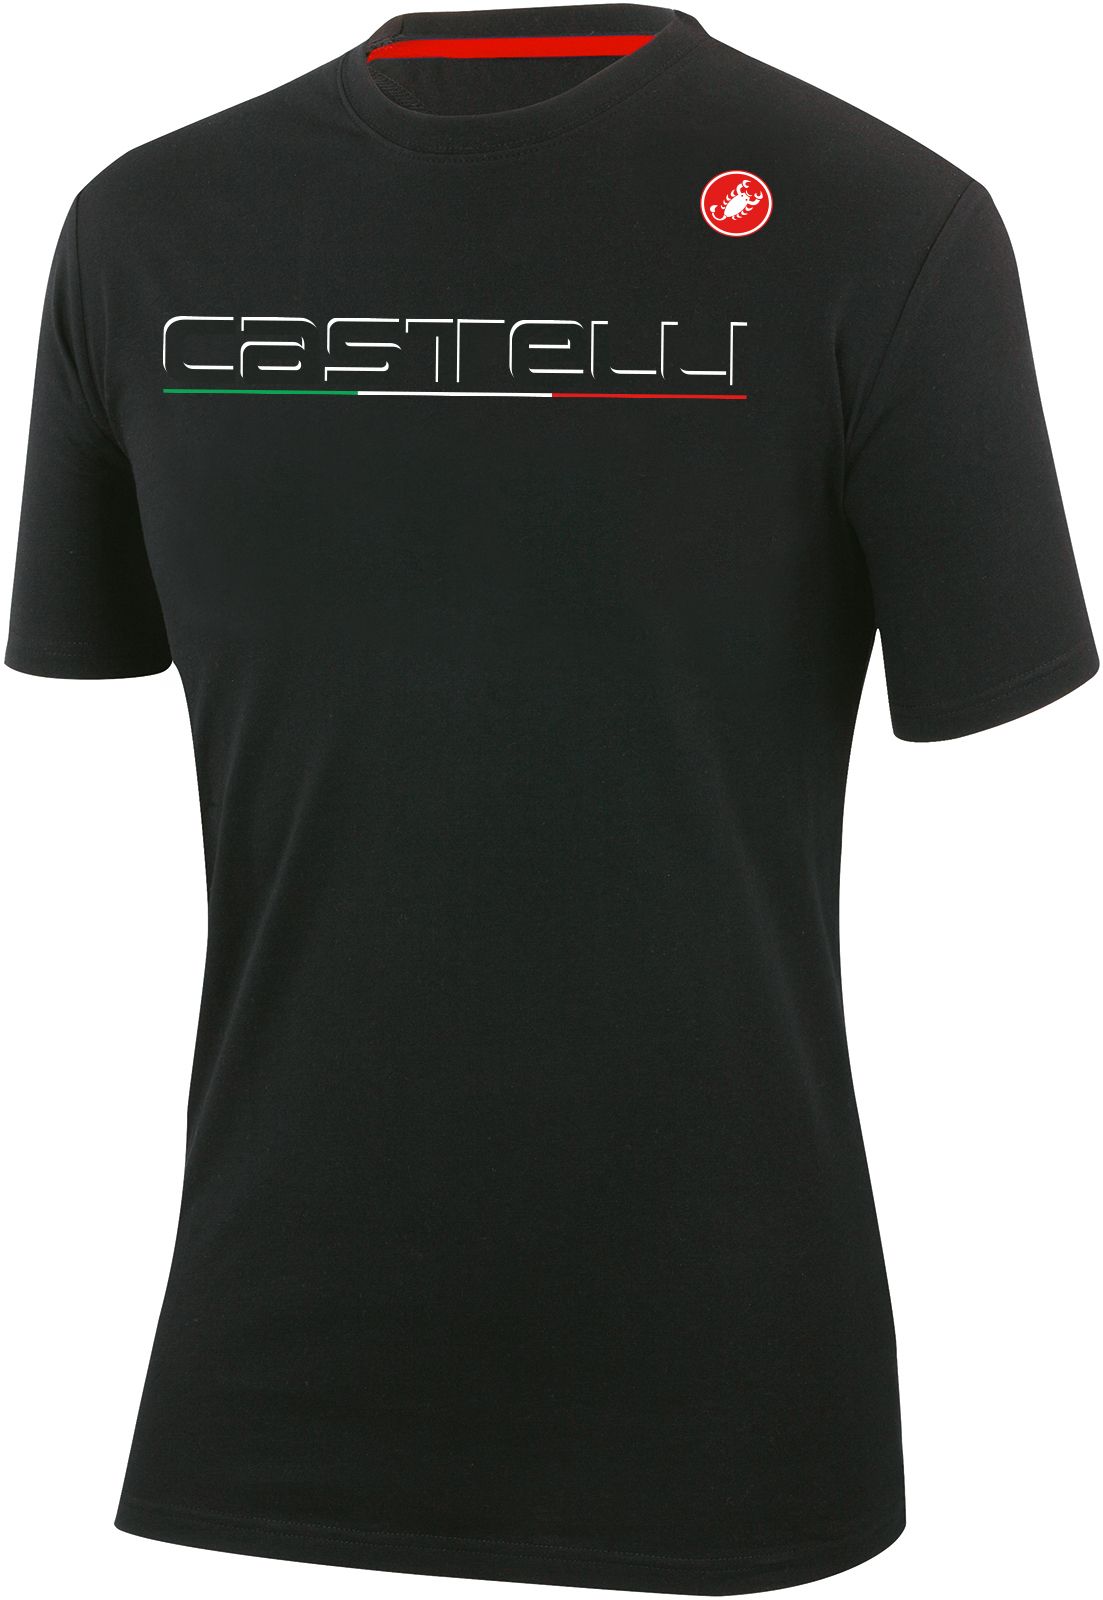 Castelli Classics T-Shirt